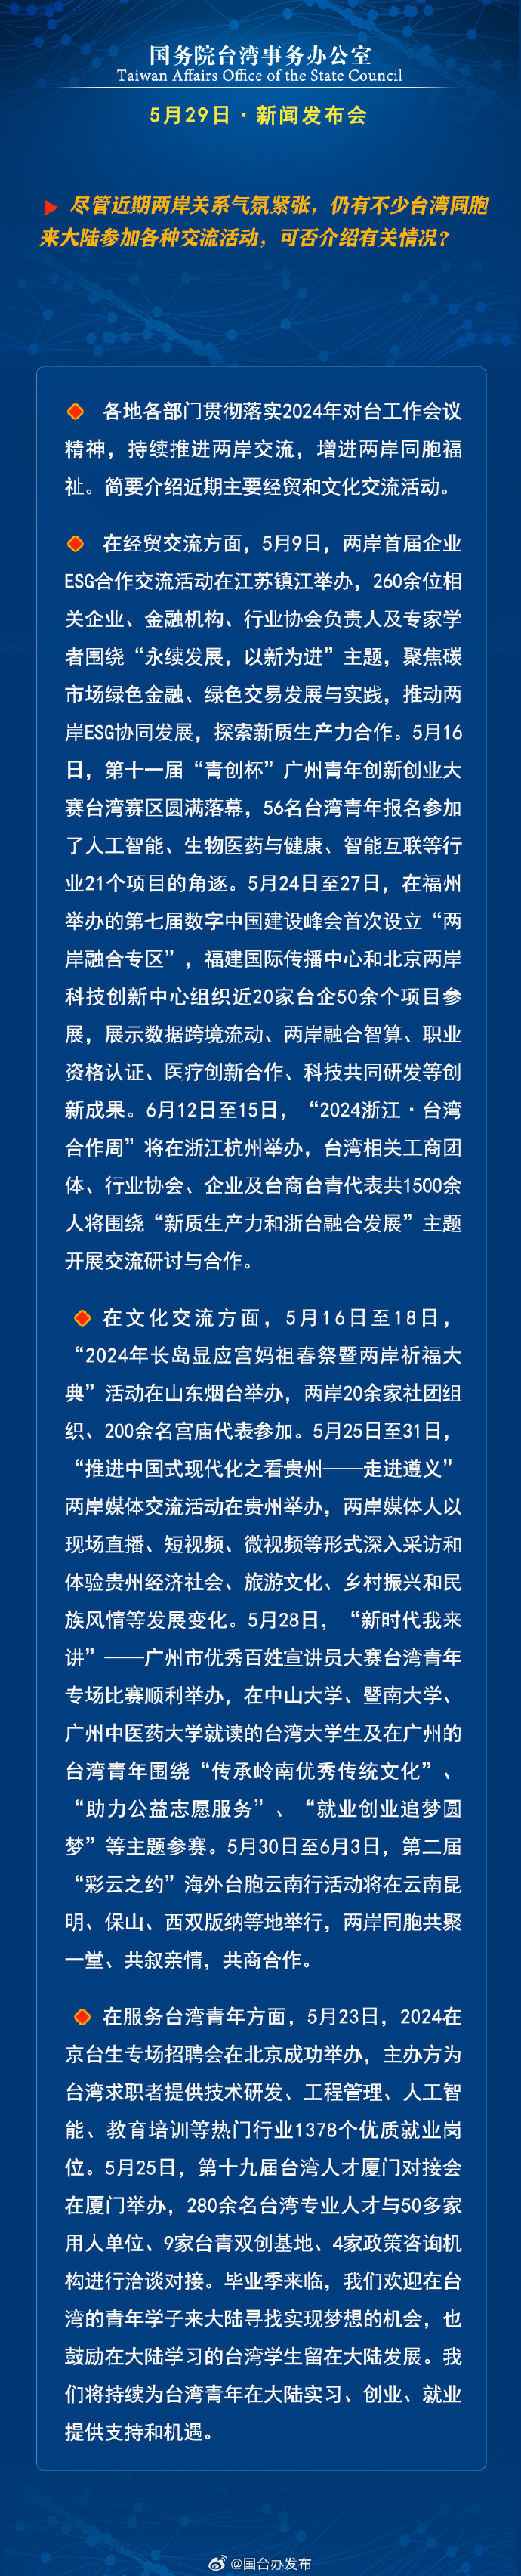 国务院台湾事务办公室5月29日·新闻发布会